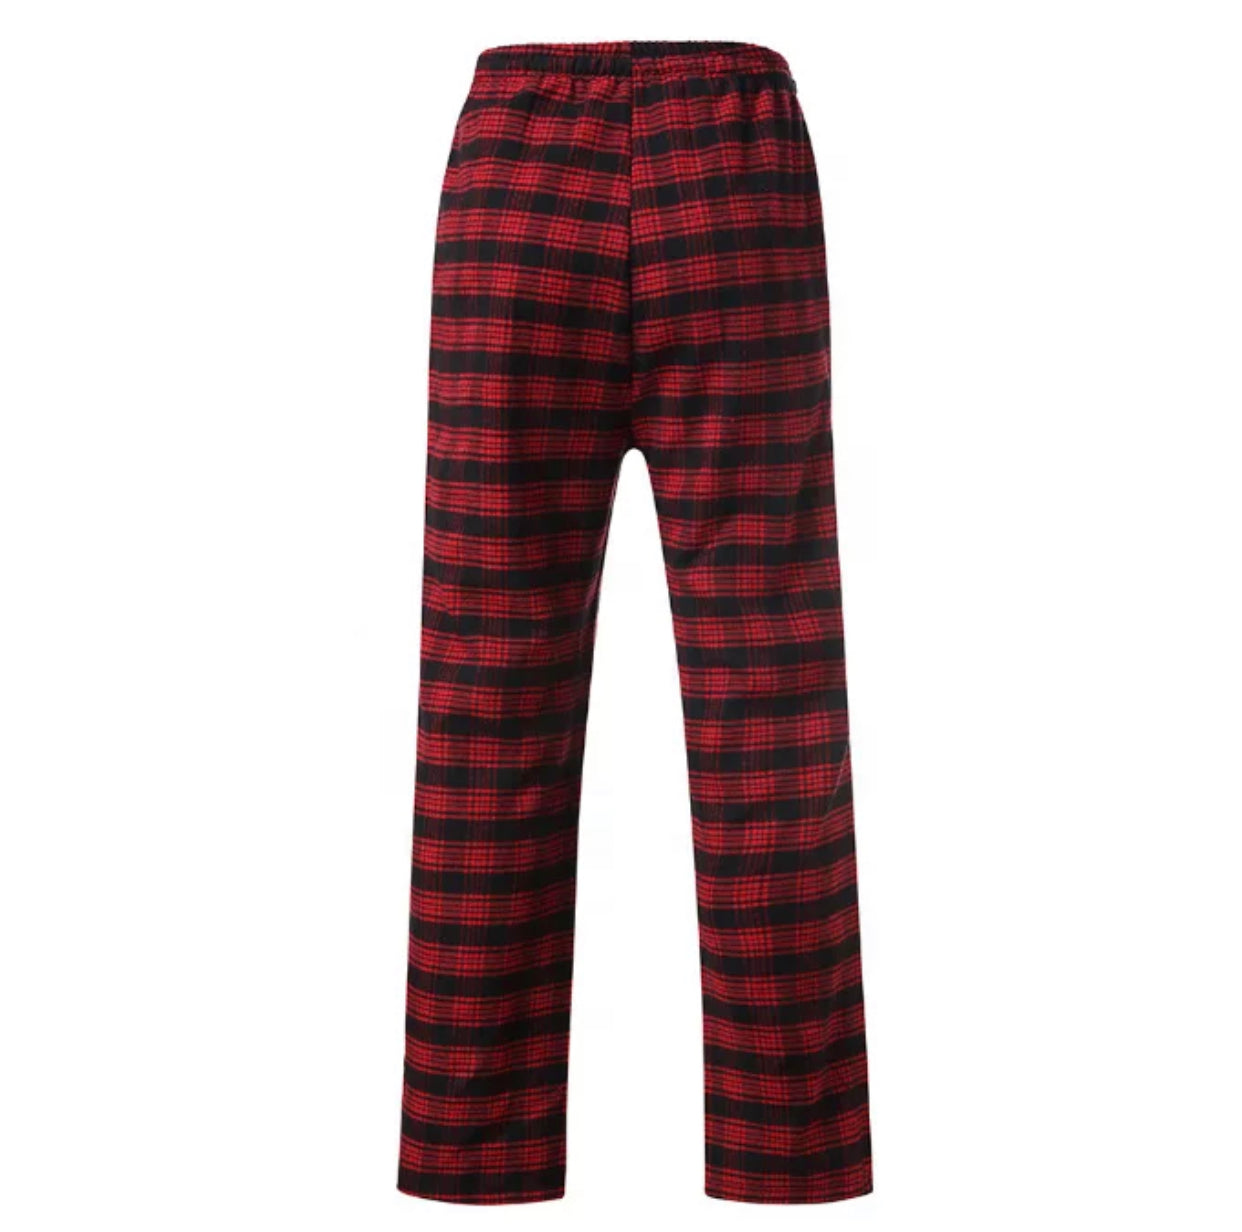 The Everyday Pajama Pant